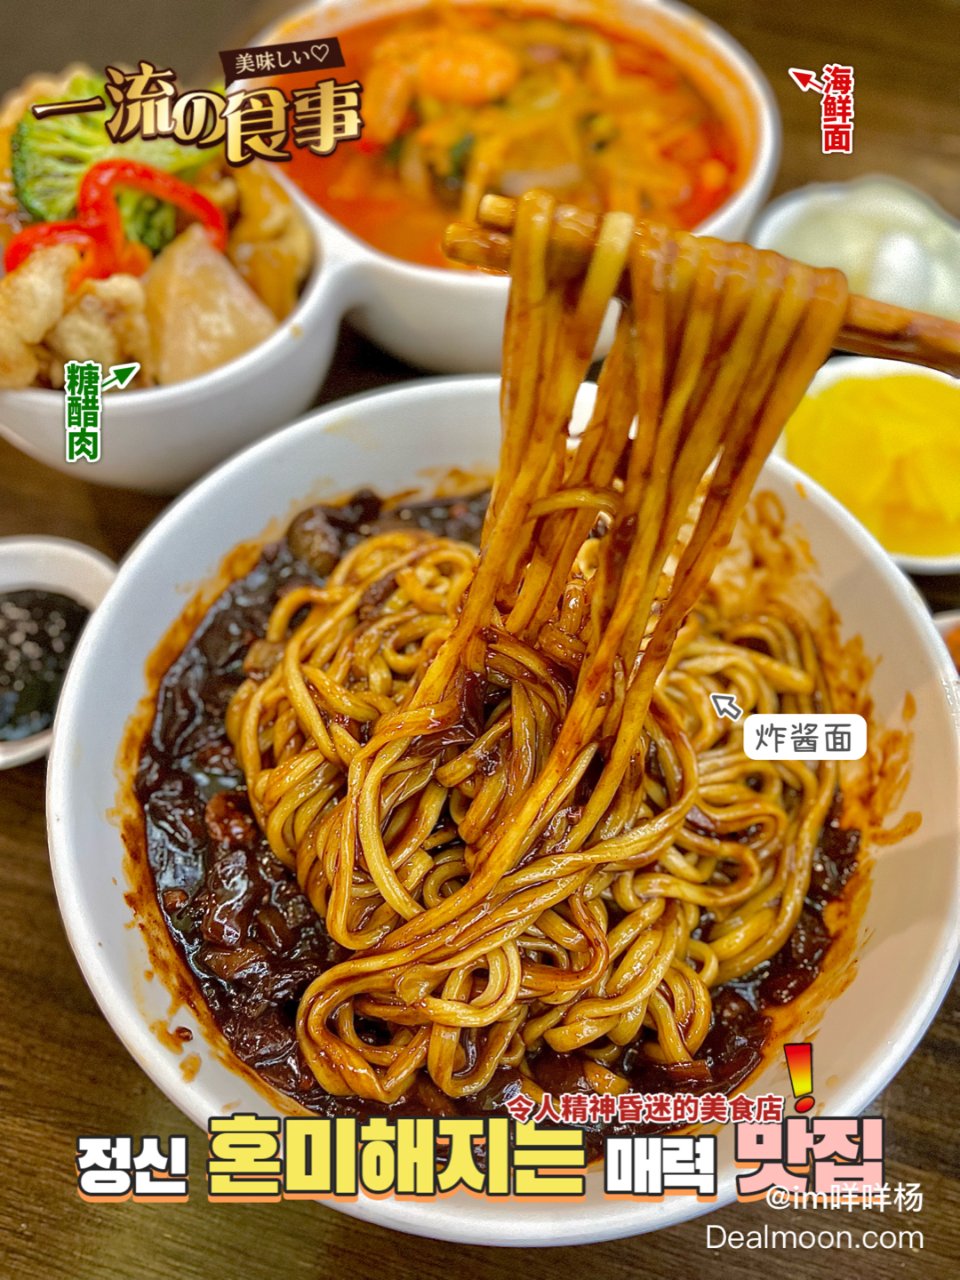 韩式炸酱面+糖醋肉双拼yyds‼️ 法拉盛宝藏💯 | 晒晒圈美食精选